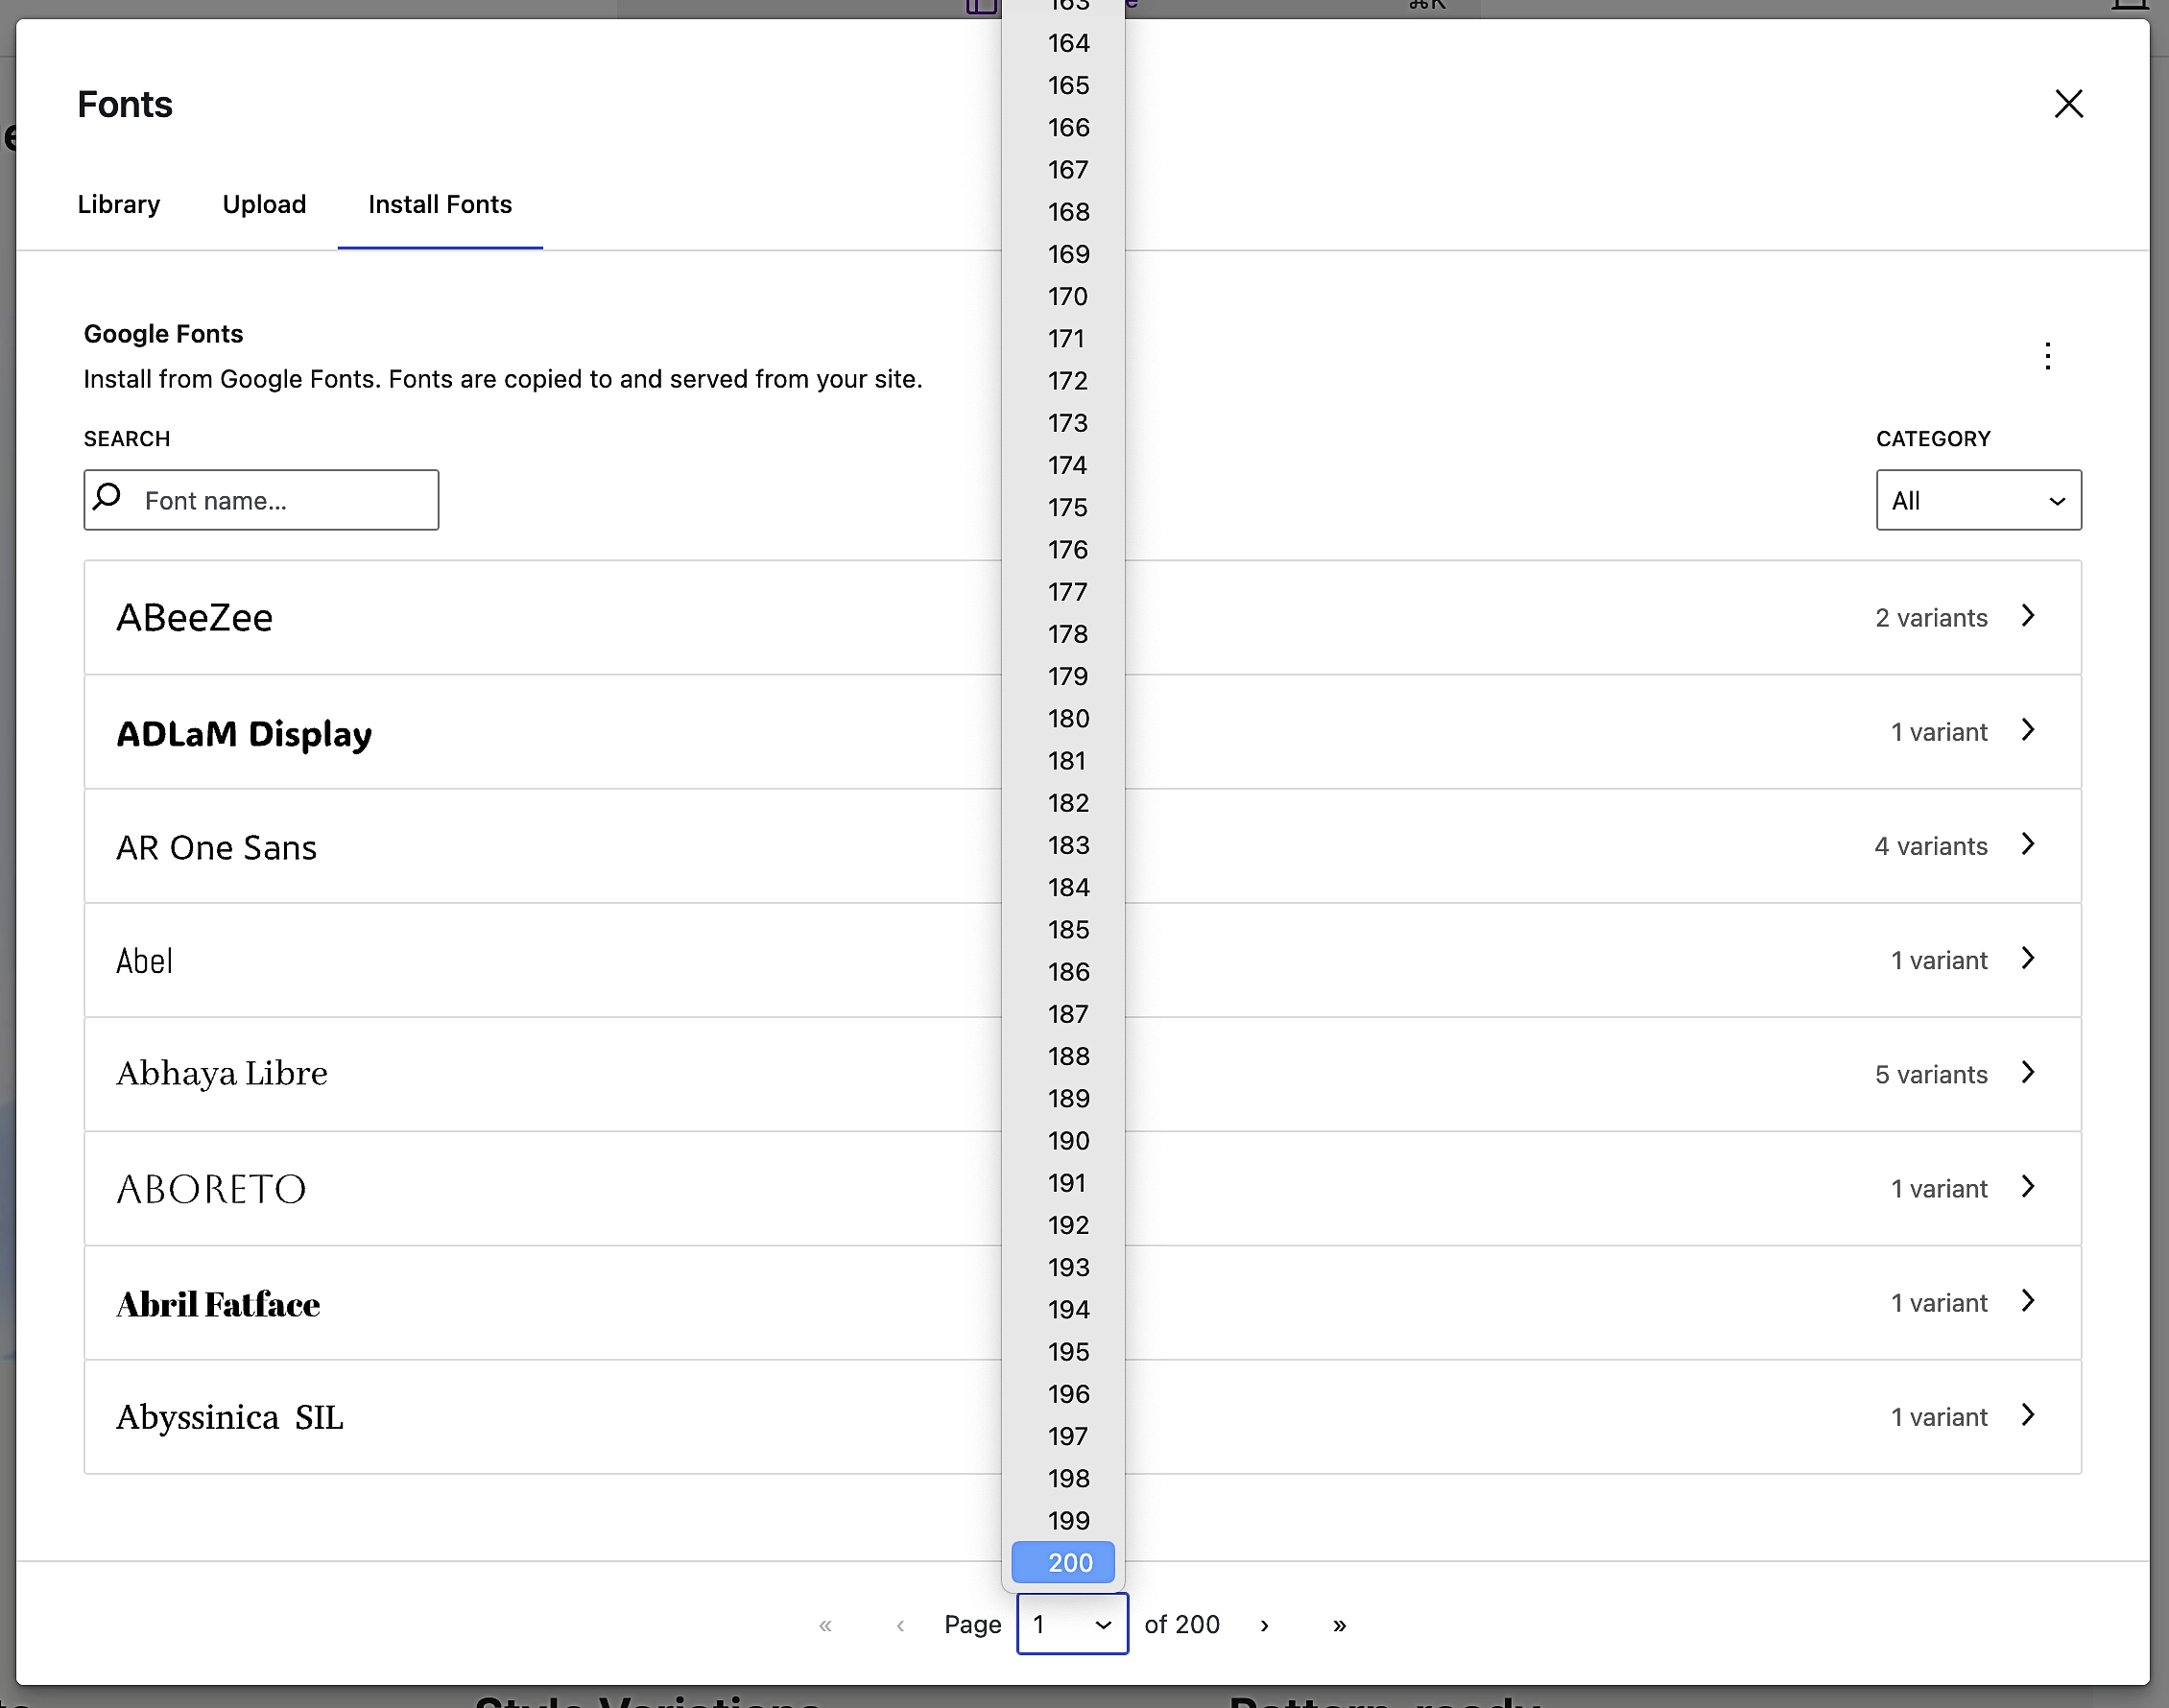 แสดงว่าคุณสามารถเข้าถึงตัวเลือกแบบอักษรมากกว่า 200 หน้าใน Google Fonts